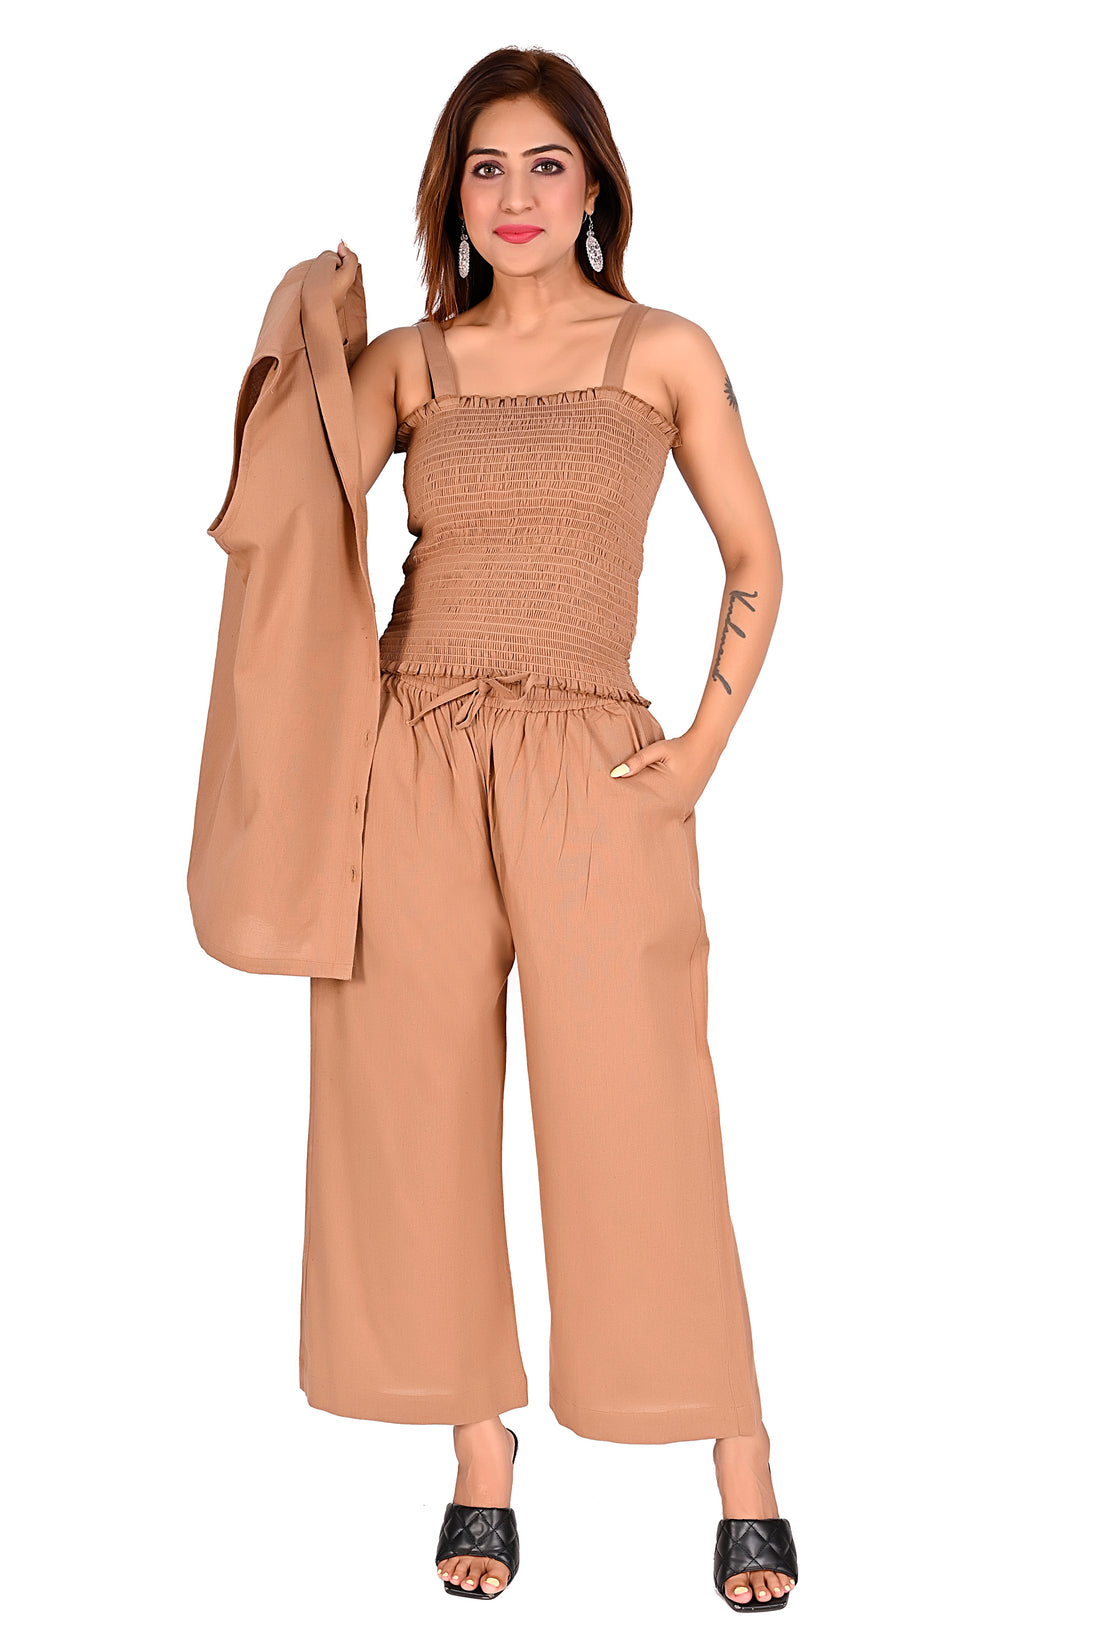 Nirmal online Premium cotton Co-ord set for Women Brown colour